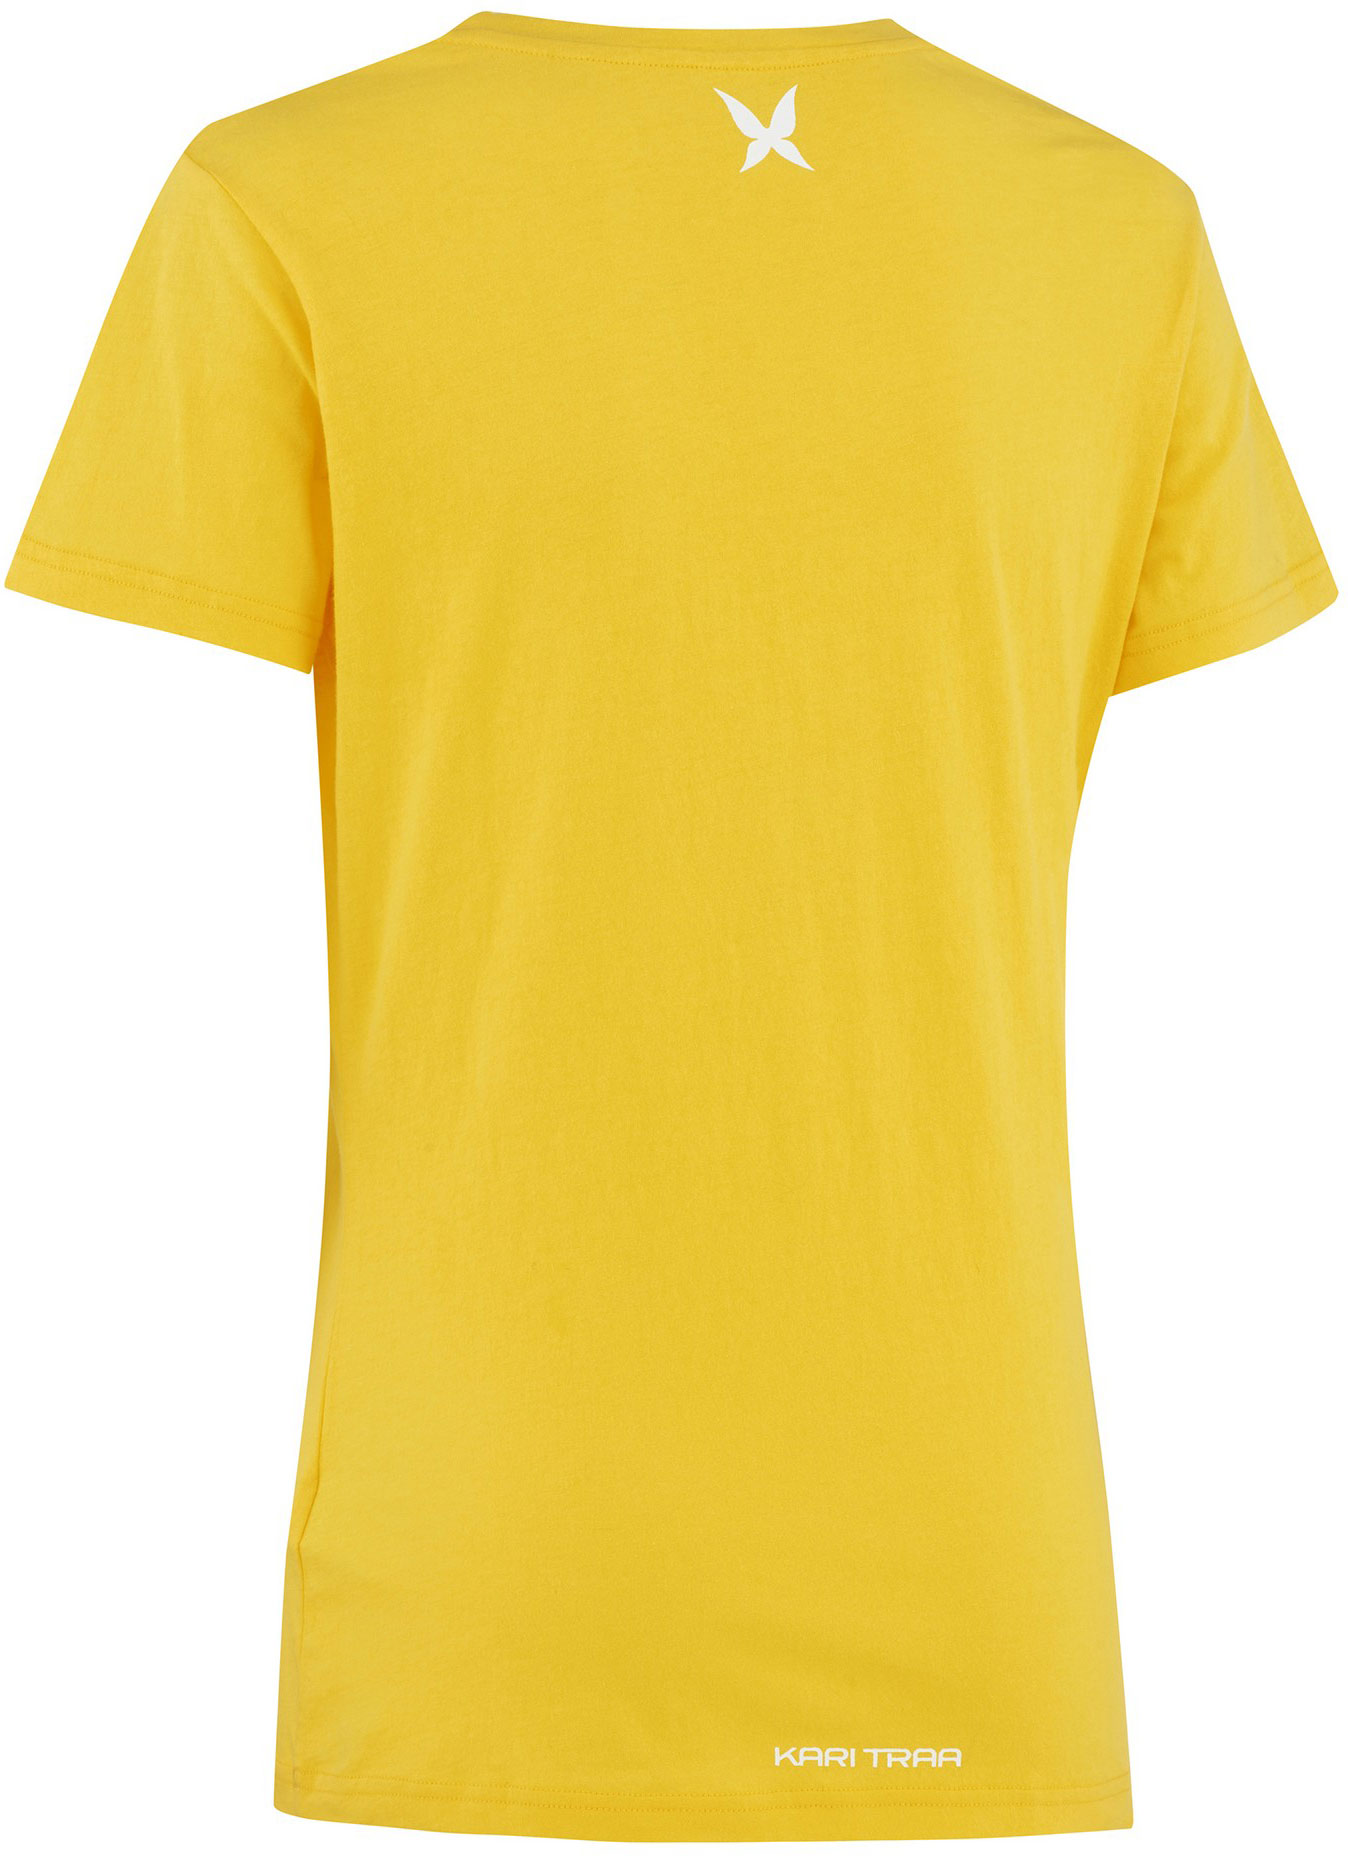 Women's short sleeve T-shirt